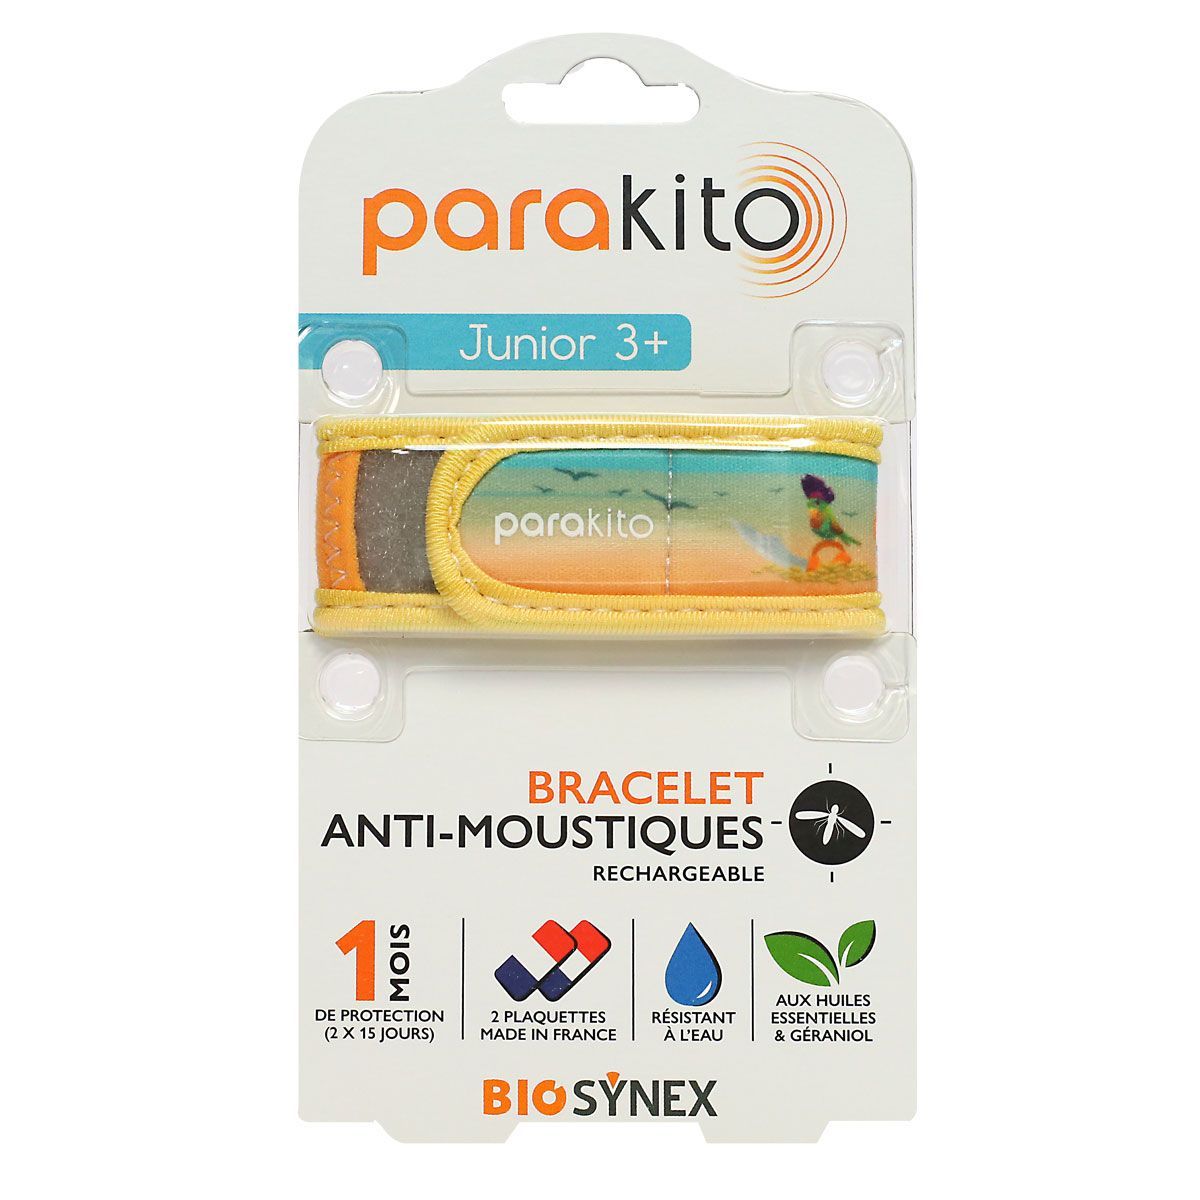 Parakito bracelet anti-moustiques rechargeable junior pirates